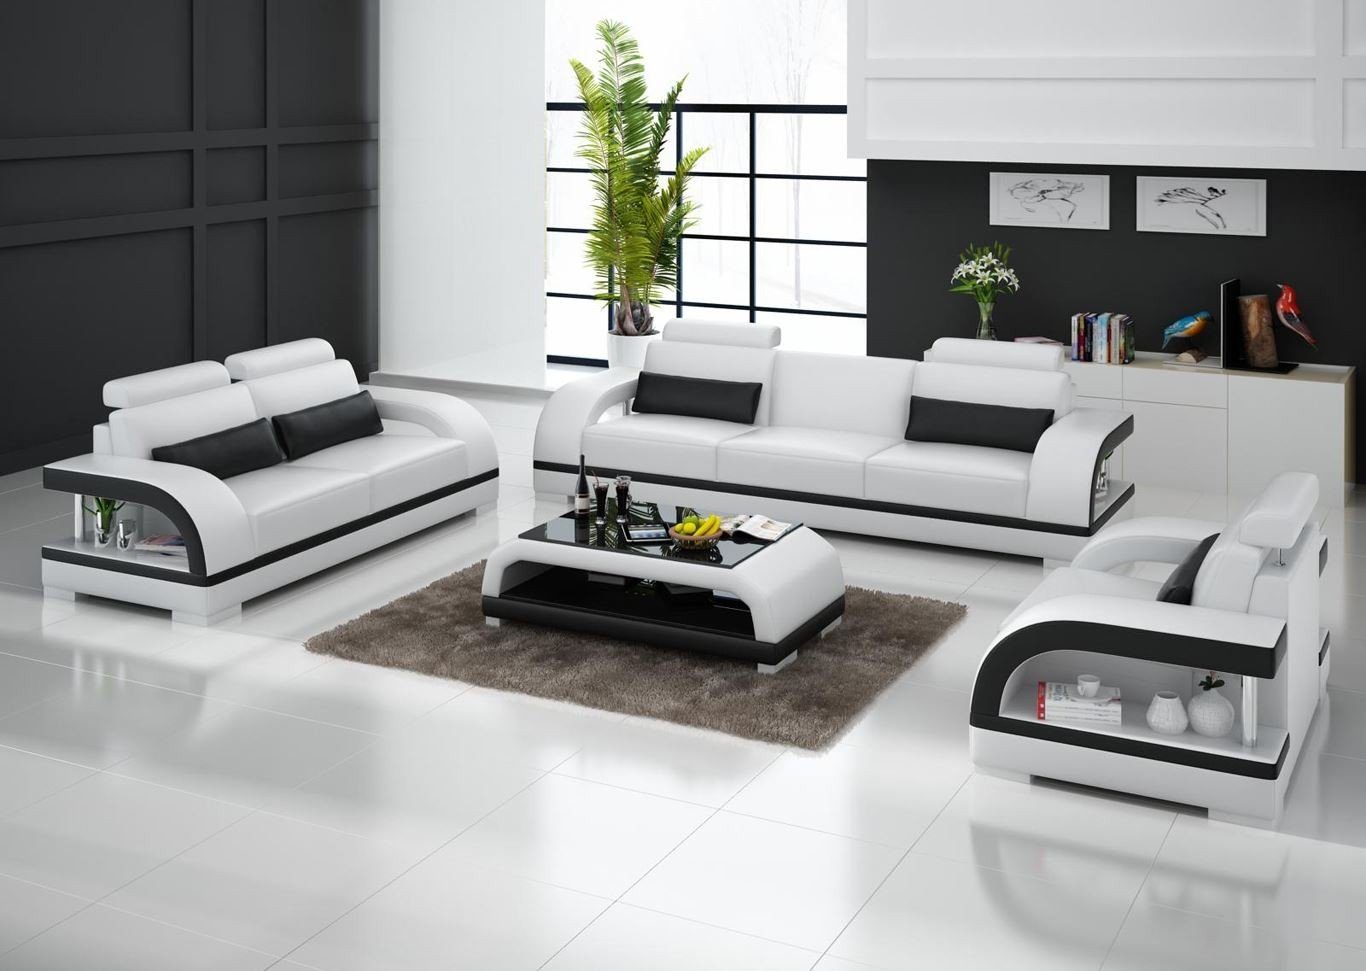 Sofa Europe in Design, Sitzer Moderne Sofagarnitur 3+1+1 JVmoebel Ledersofas Weiß Made Garnituren